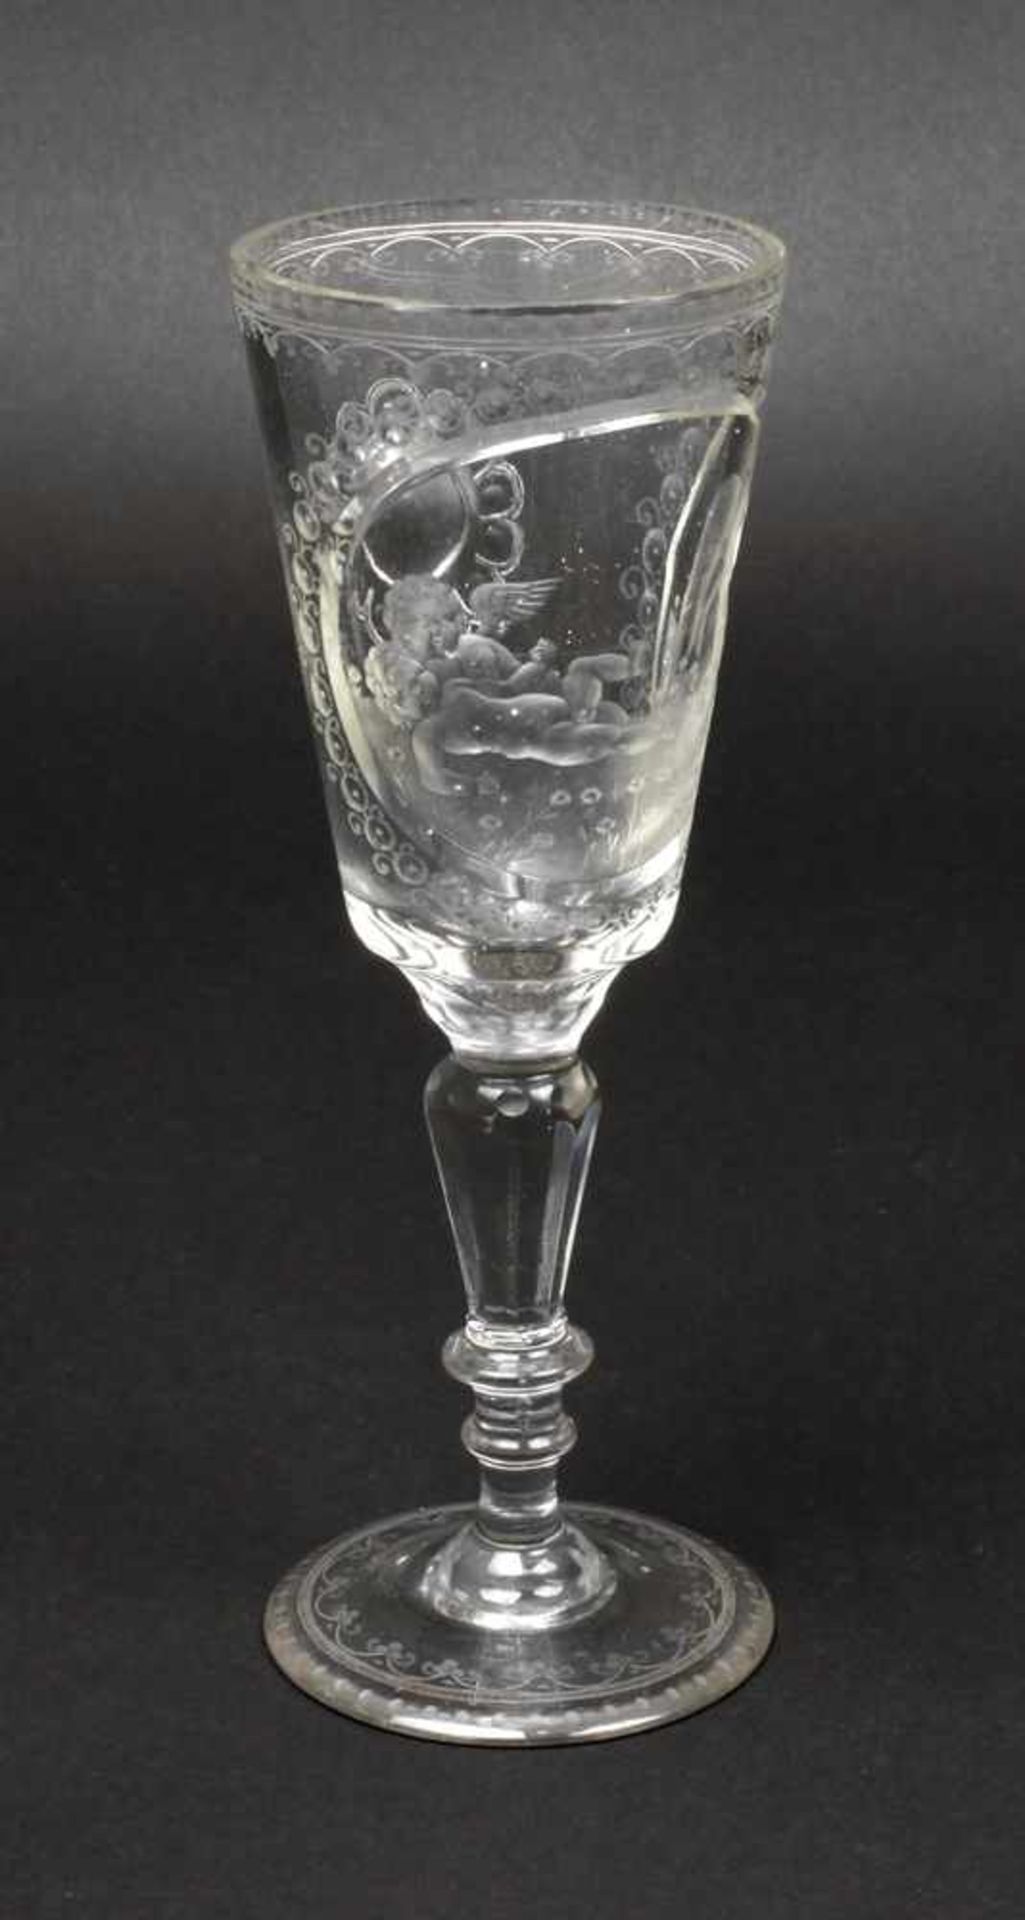 Pokalglas mit Engelsmotiven19. Jh., farbloses Glas, flacher Scheibenfuß, facettierter Schaft mit